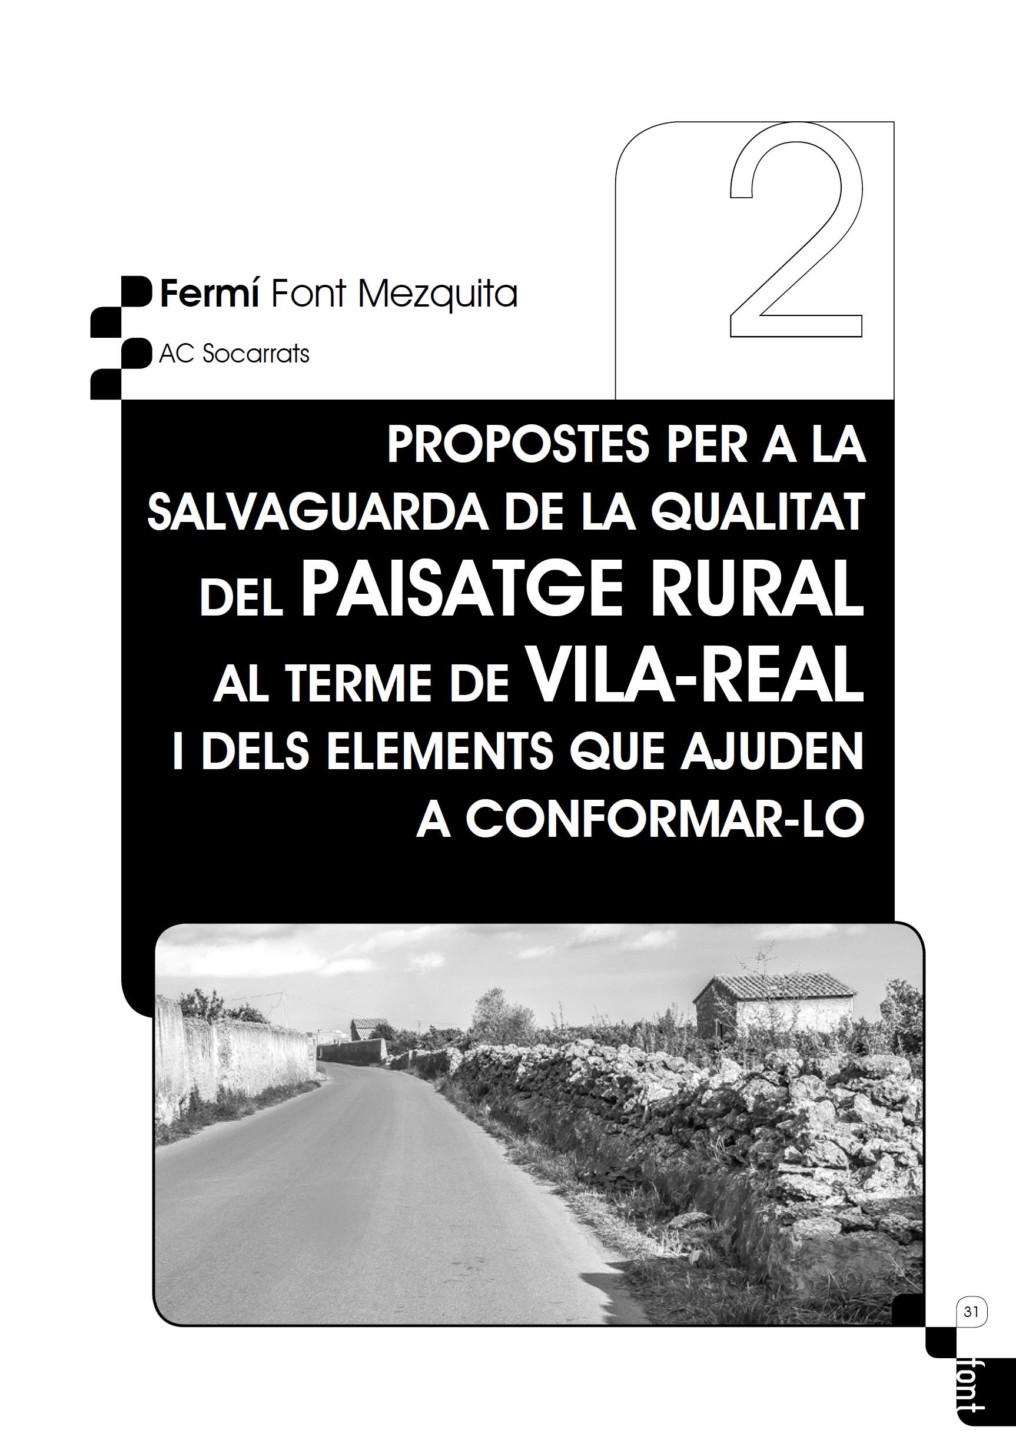 Propostes per a la salvaguarda de la qualitat del paisatge rural al terme de Vila-real i dels elements que ajuden a conformar-lo